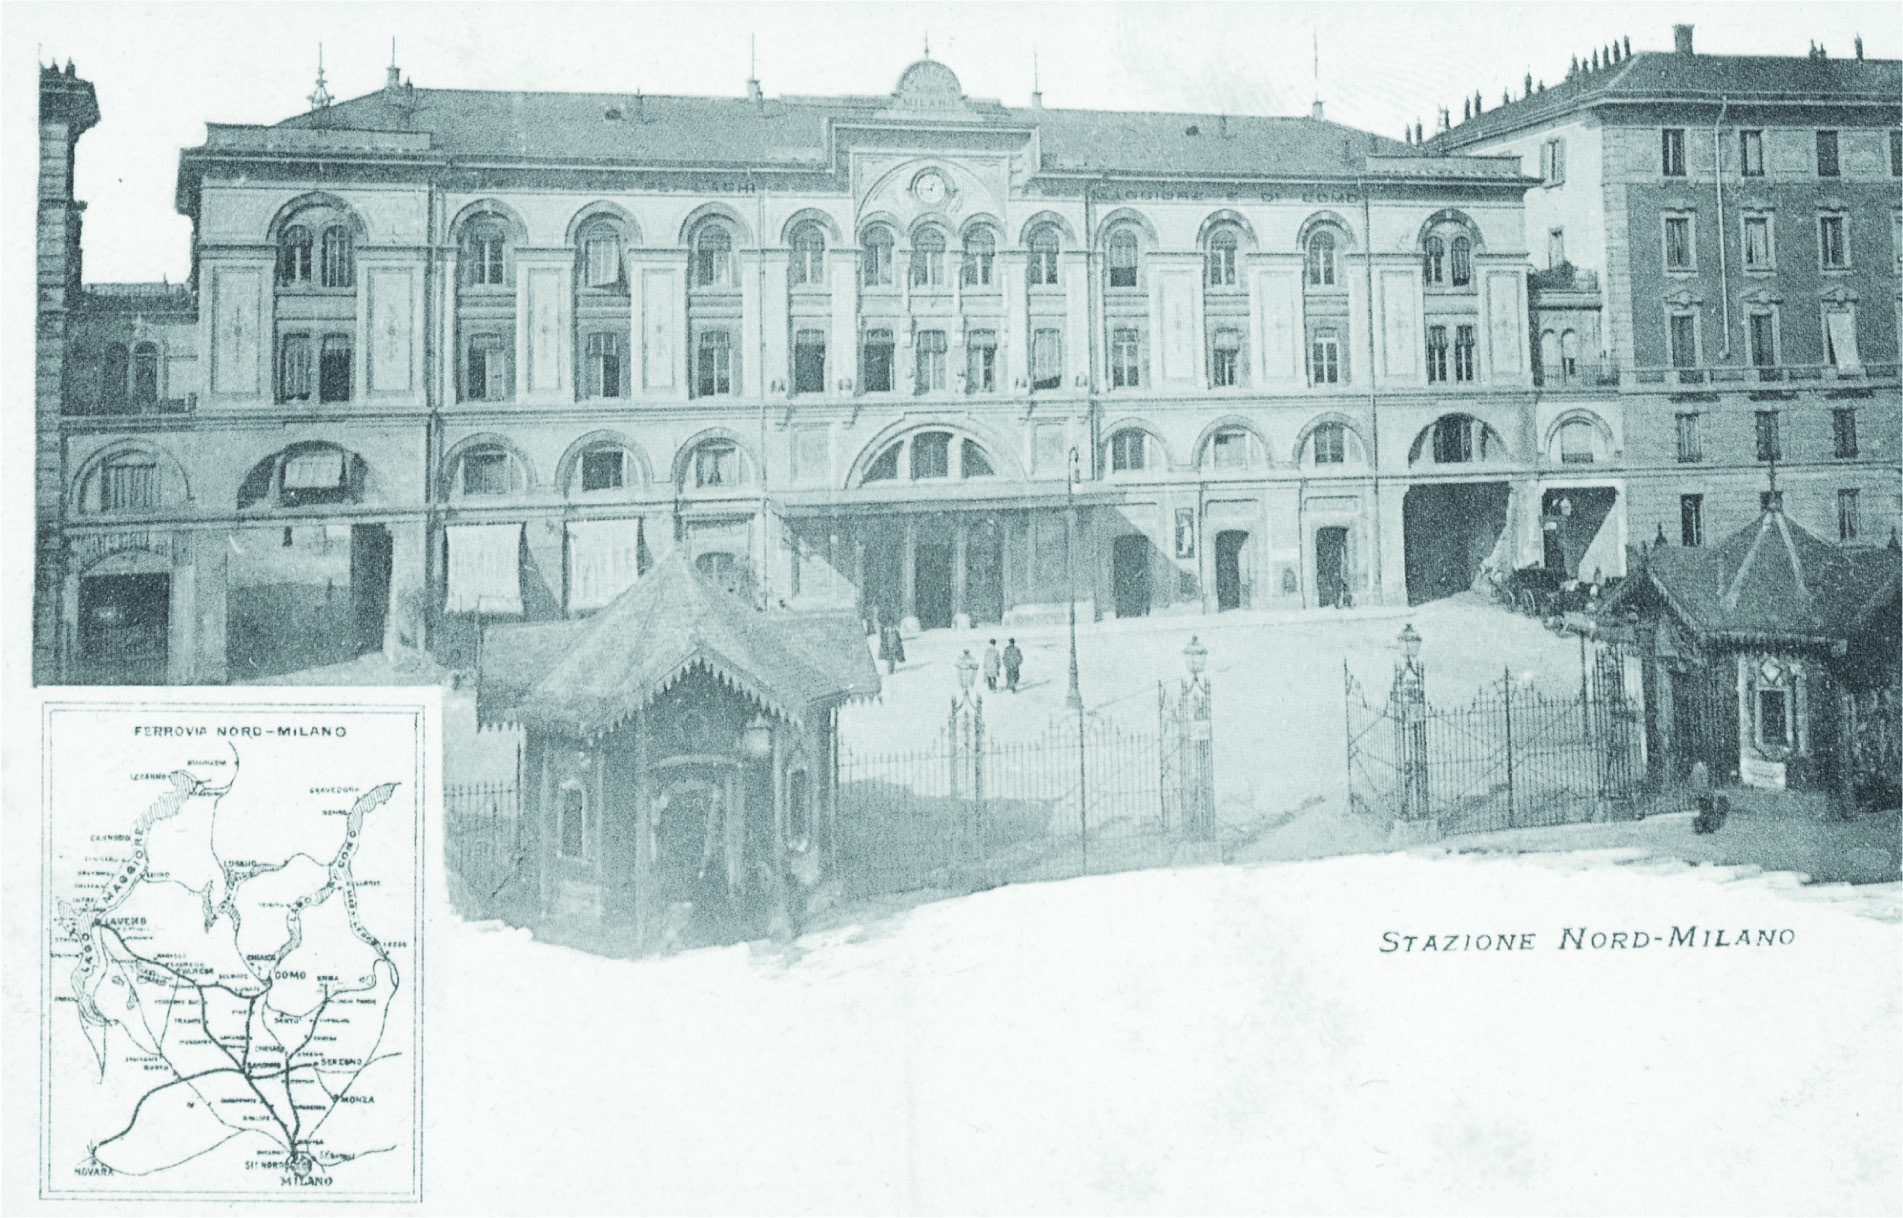 FNM-Piazzale-Cadorna-Stazione-Ferrovie-Nord-Milano-1885